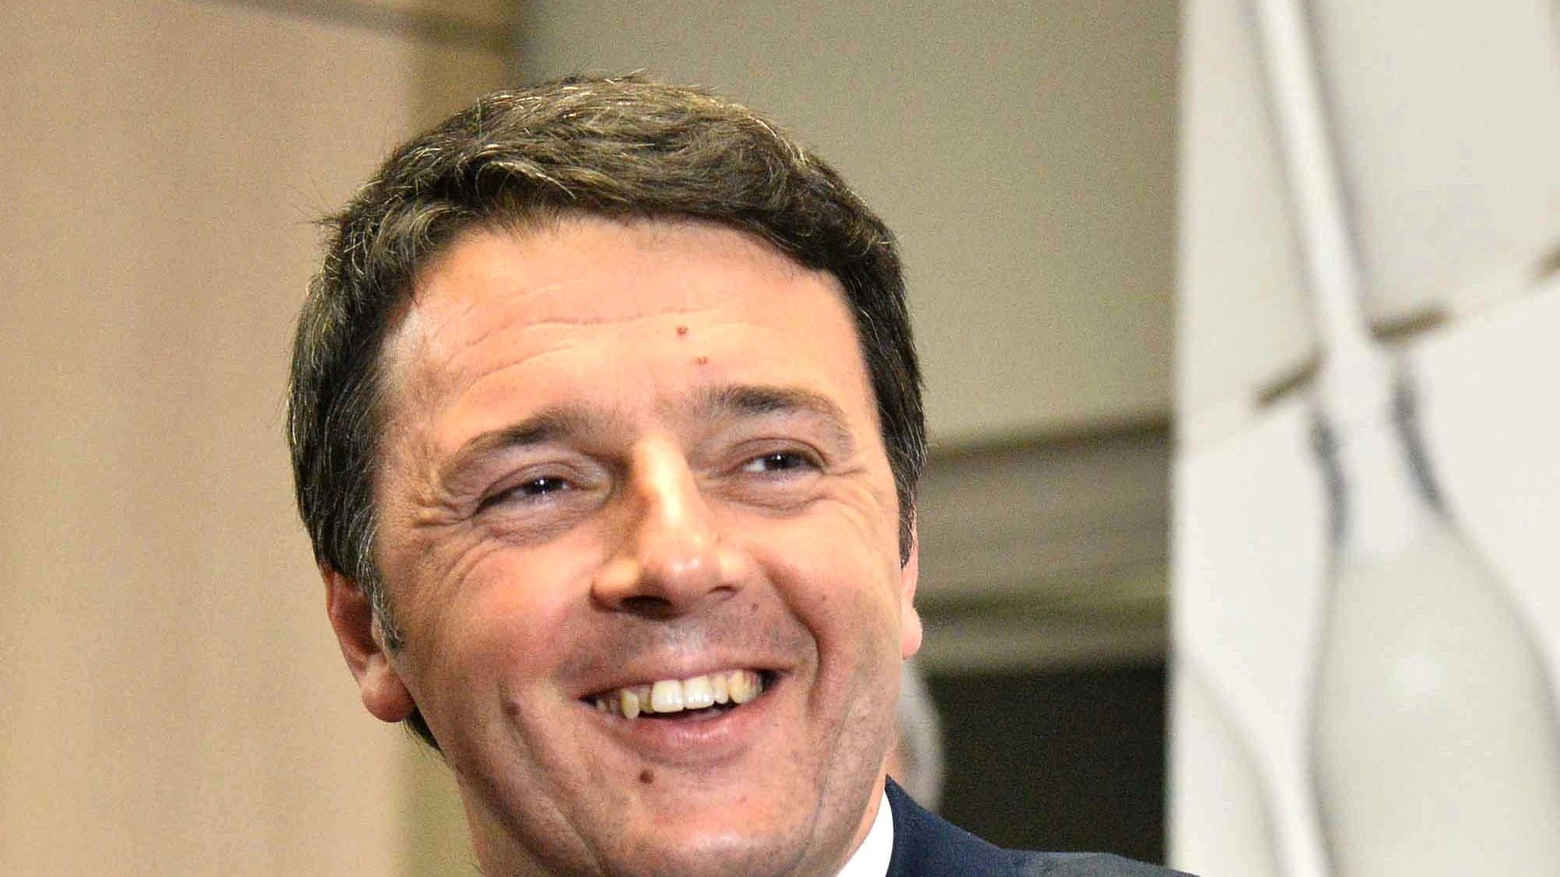 Ecco la sterzata di Renzi: "Noi col centrosinistra"